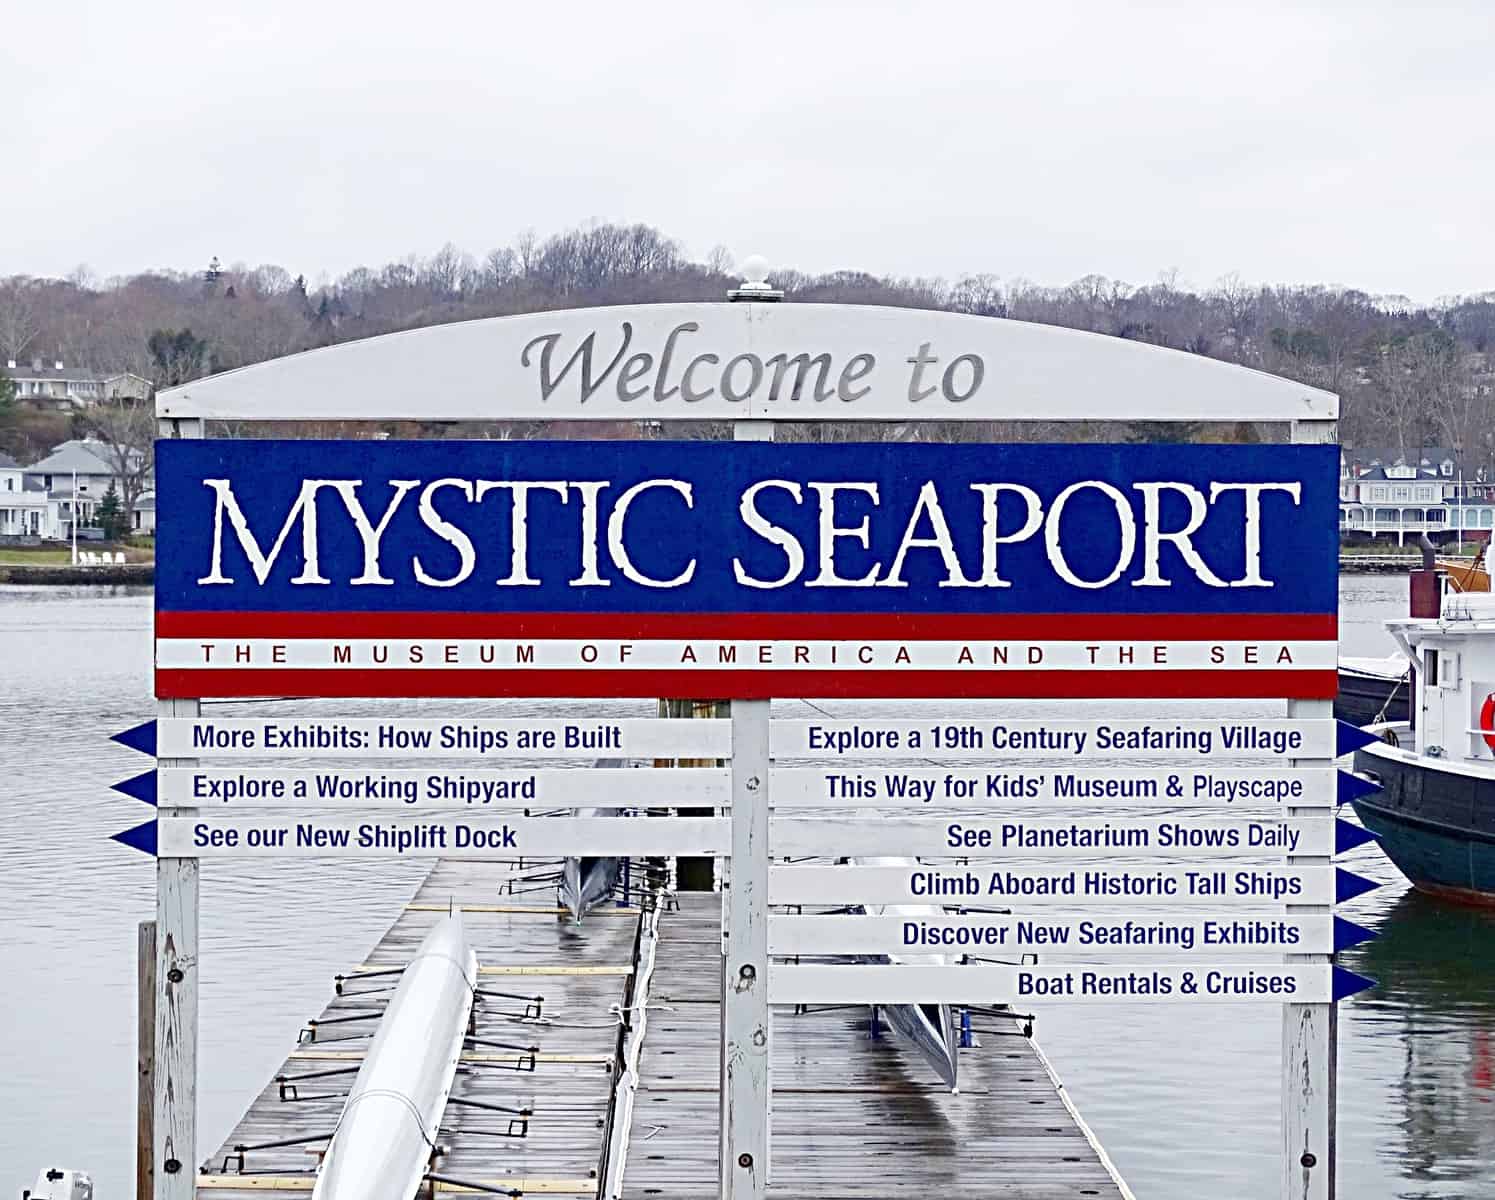 Mystic Seaport in Connecticut